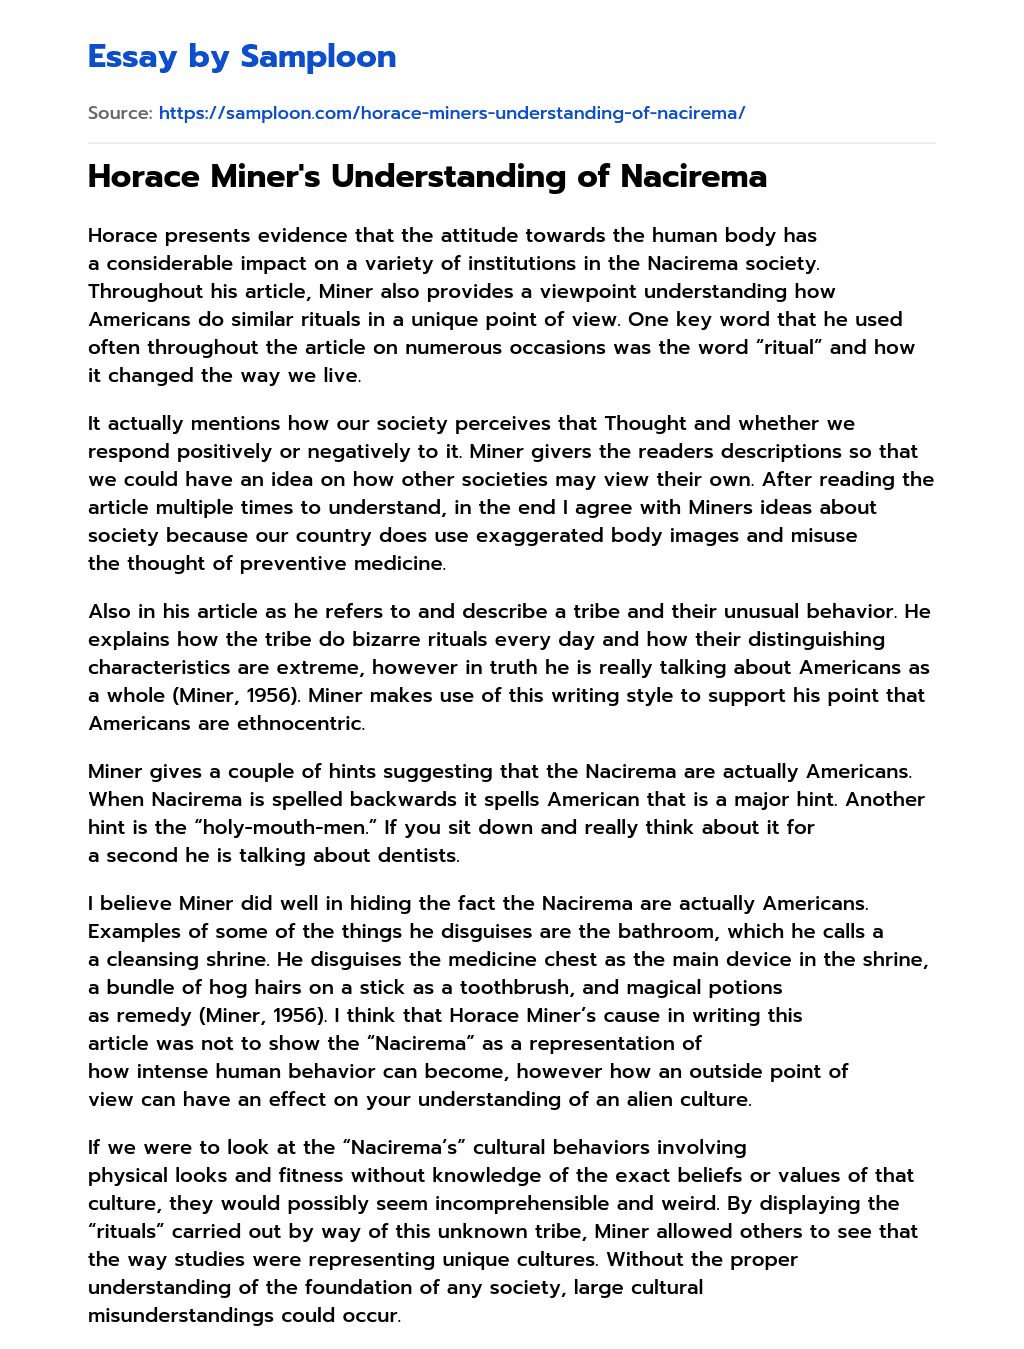 Horace Miner’s Understanding of Nacirema essay